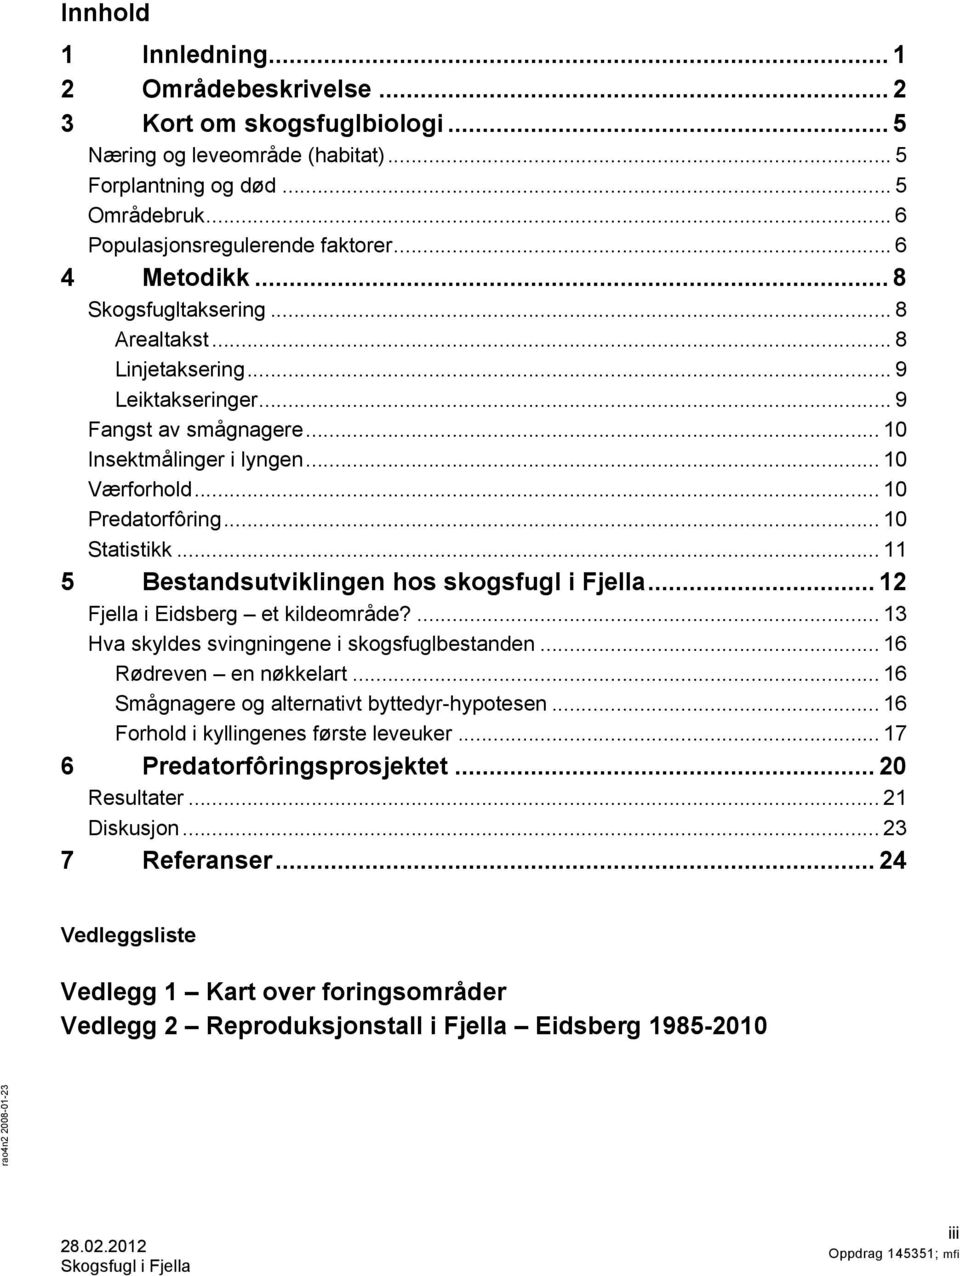 .. 10 Statistikk... 11 5 Bestandsutviklingen hos skogsfugl i Fjella... 12 Fjella i Eidsberg et kildeområde?... 13 Hva skyldes svingningene i skogsfuglbestanden... 16 Rødreven en nøkkelart.